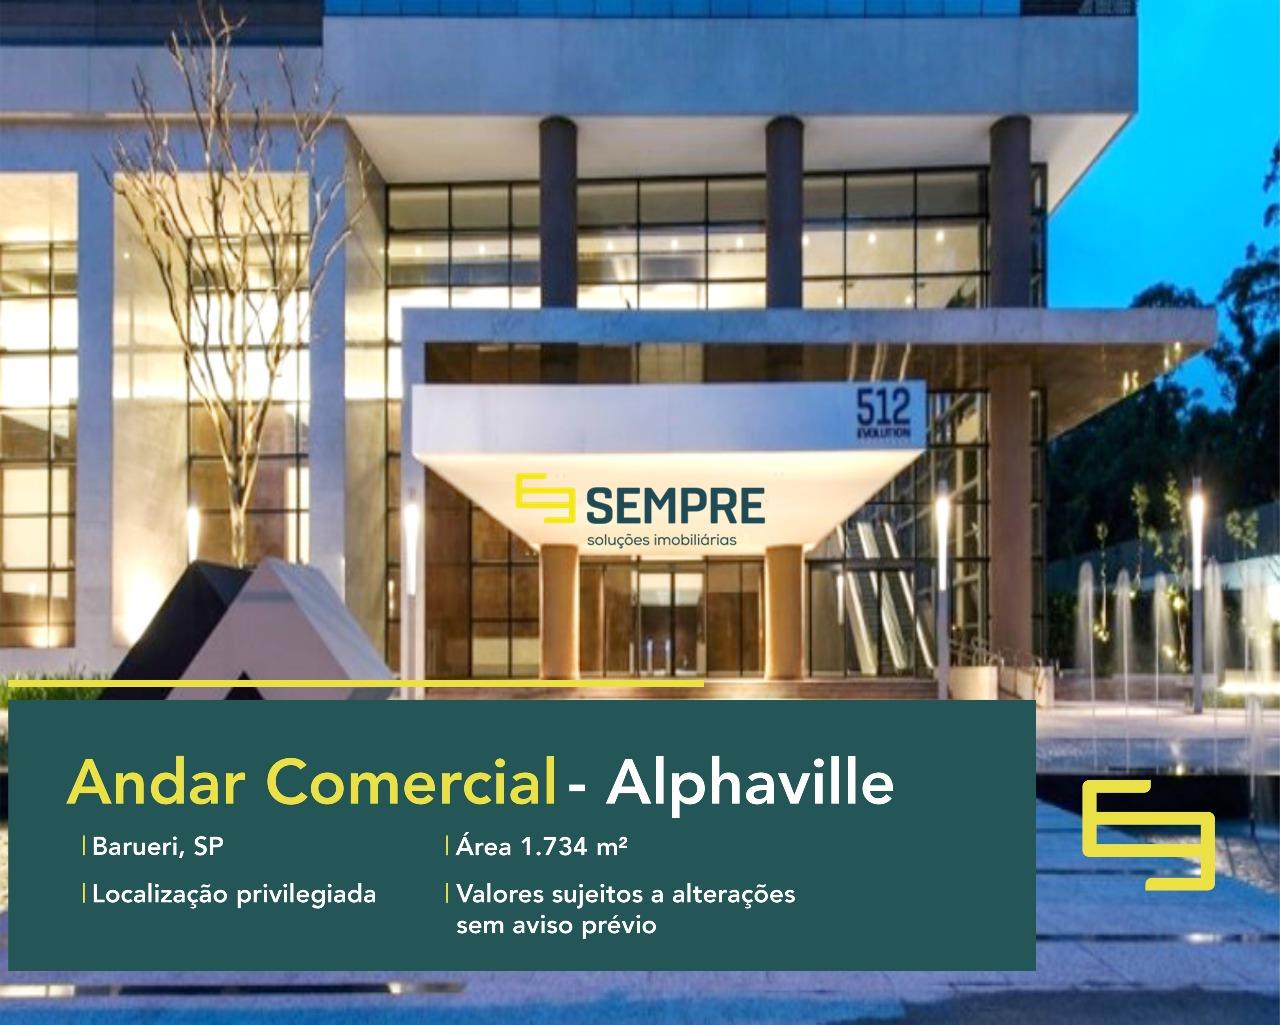 Laje corporativa em Barueri no Alphaville para locação - São Paulo. O estabelecimento comercial conta com área de 1.734,34 m².